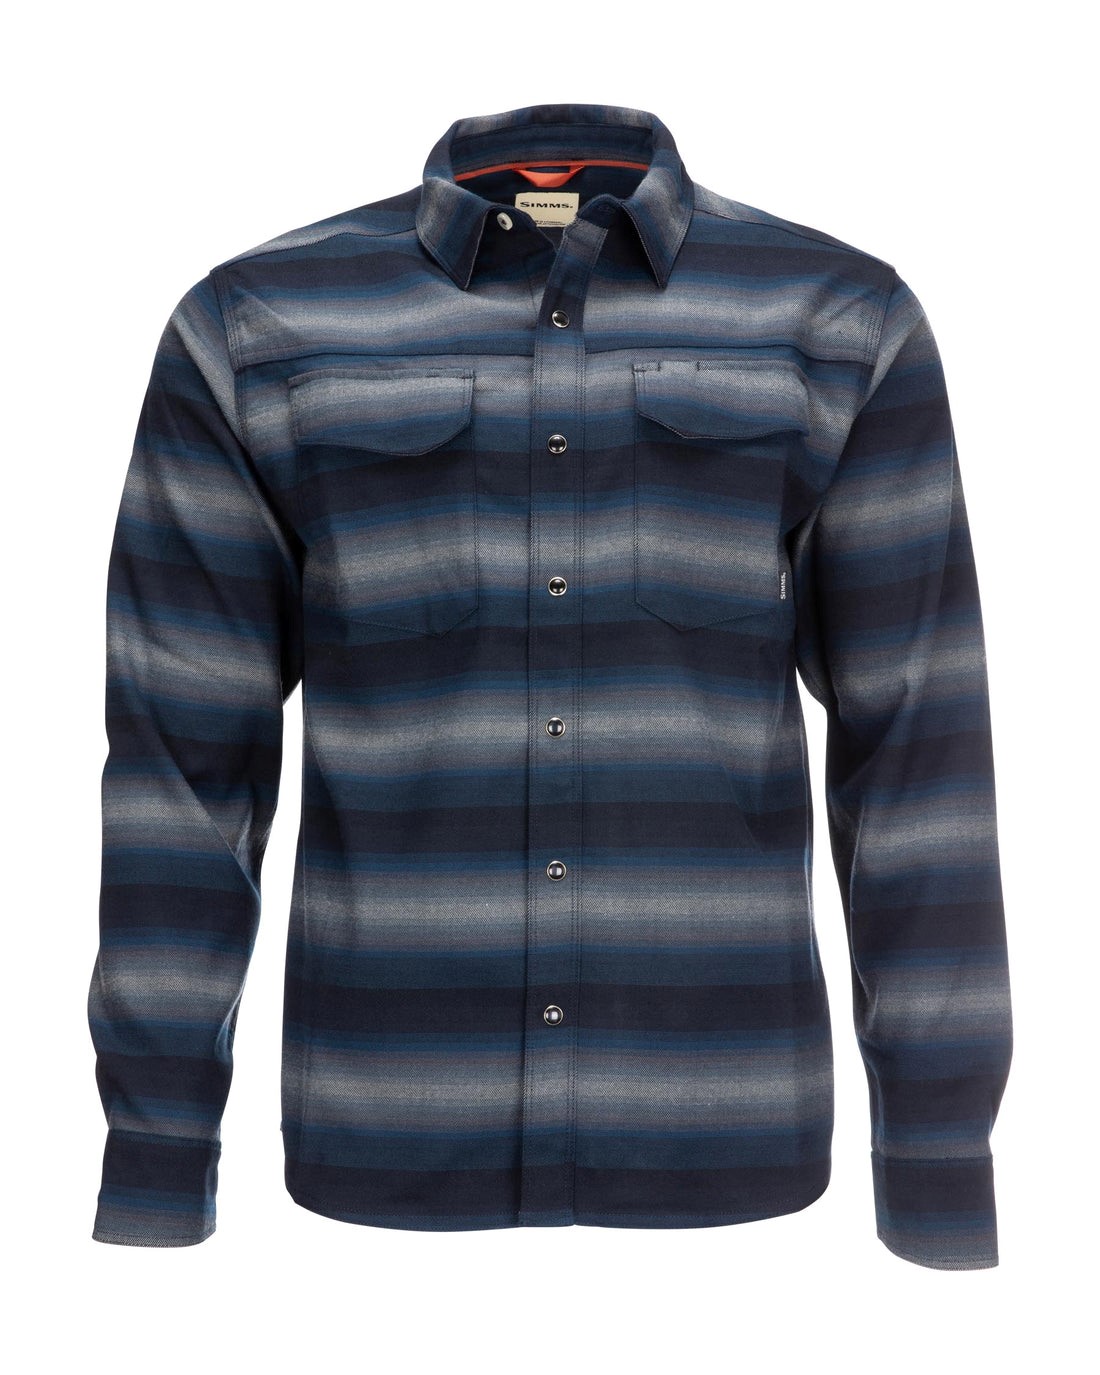 Simms M's Gallatin Flannel L/S Shirt - Rich Blue Plaid - XL